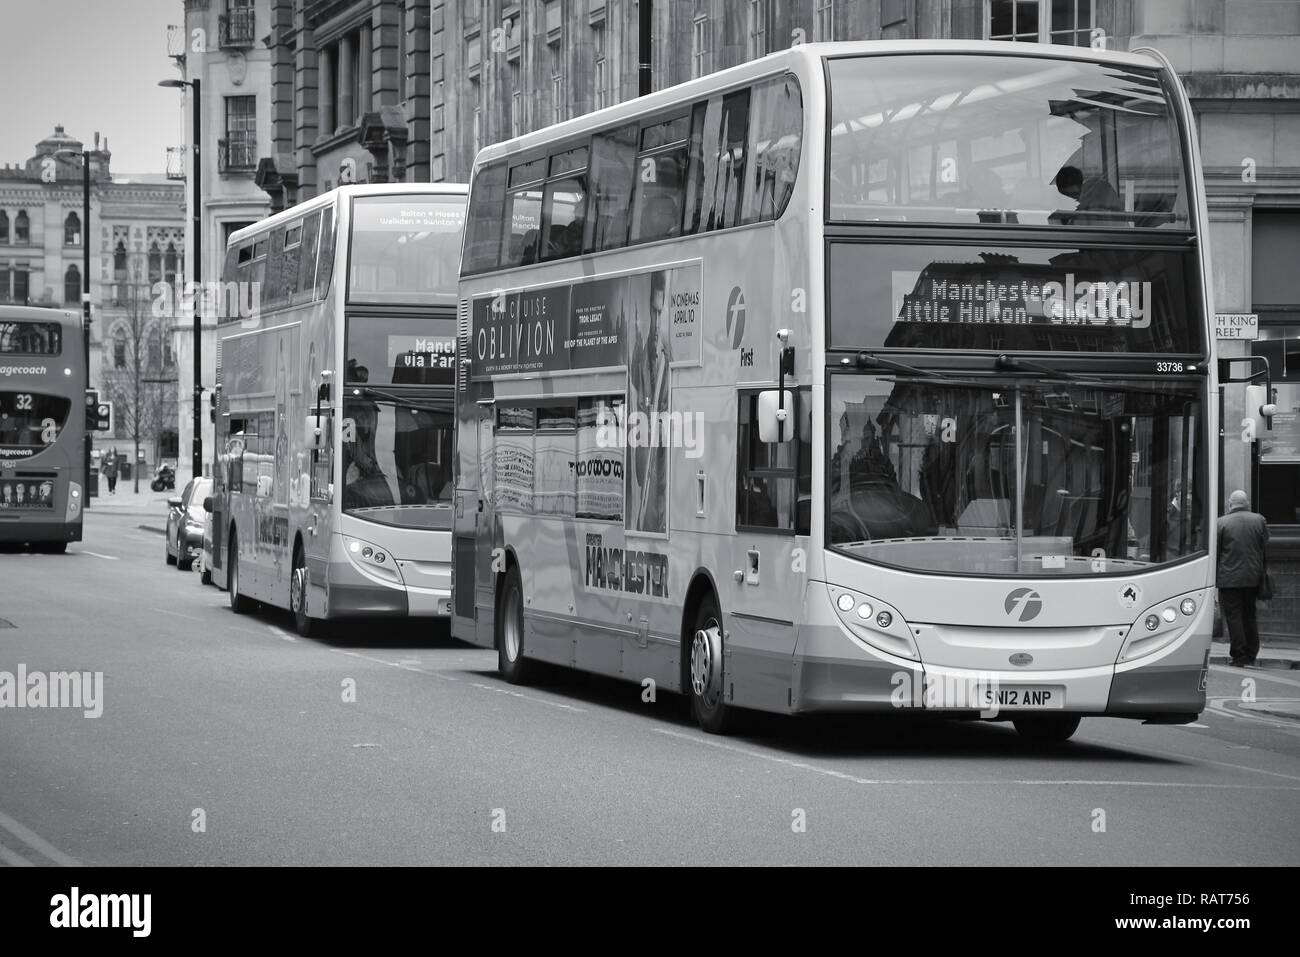 MANCHESTER, Regno Unito - 22 Aprile 2013: la gente ride FirstGroup autobus della città di Manchester, UK. FirstGroup impiega 124.000 persone. Foto Stock